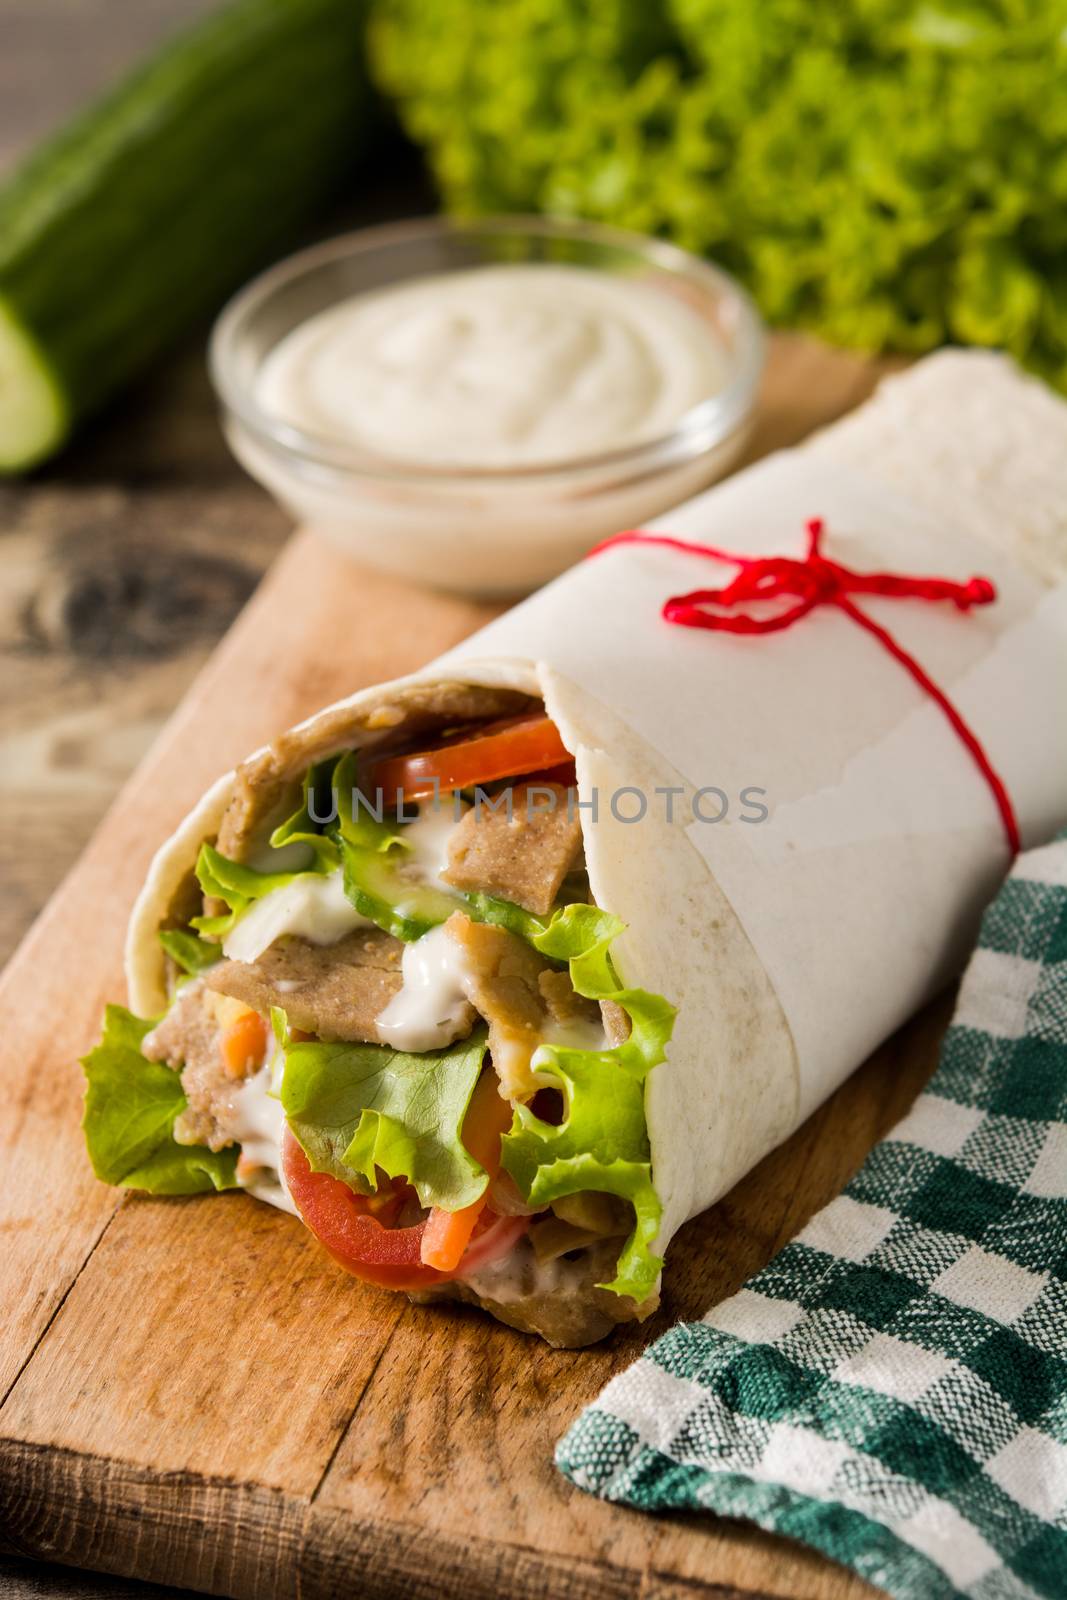 Doner kebab or shawarma sandwich by chandlervid85